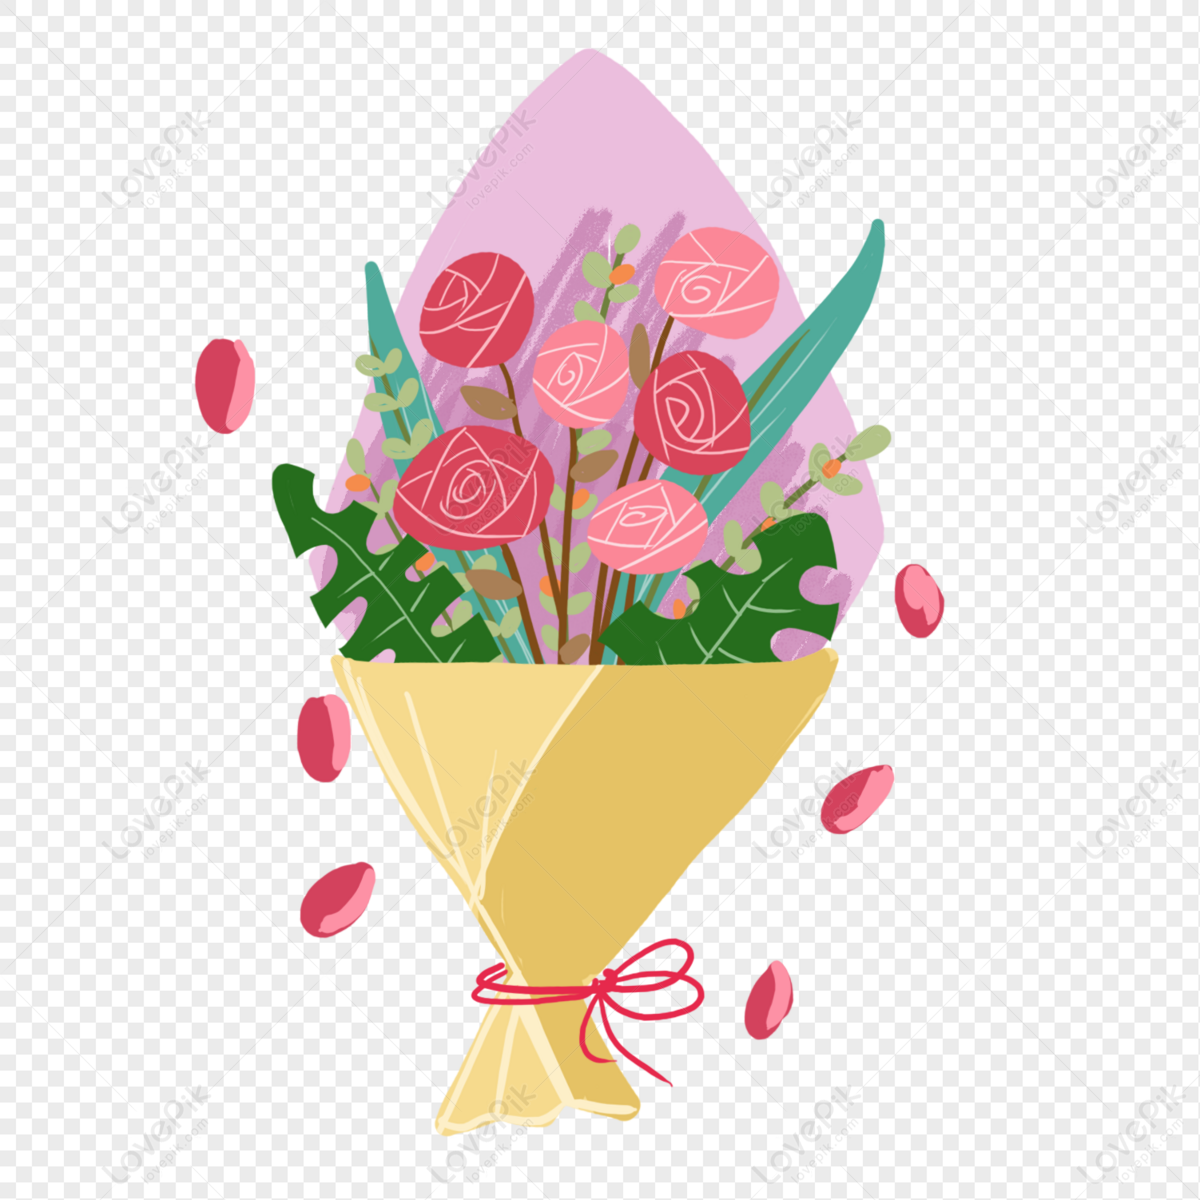 Holding Flowers PNG: Hình ảnh người cầm hoa luôn đầy cảm xúc, đong đầy tình yêu thương. Xem ngay hình ảnh Holding Flowers PNG để cảm nhận được sự yêu thương và tình cảm được gửi gắm qua những cánh hoa thơm ngát.